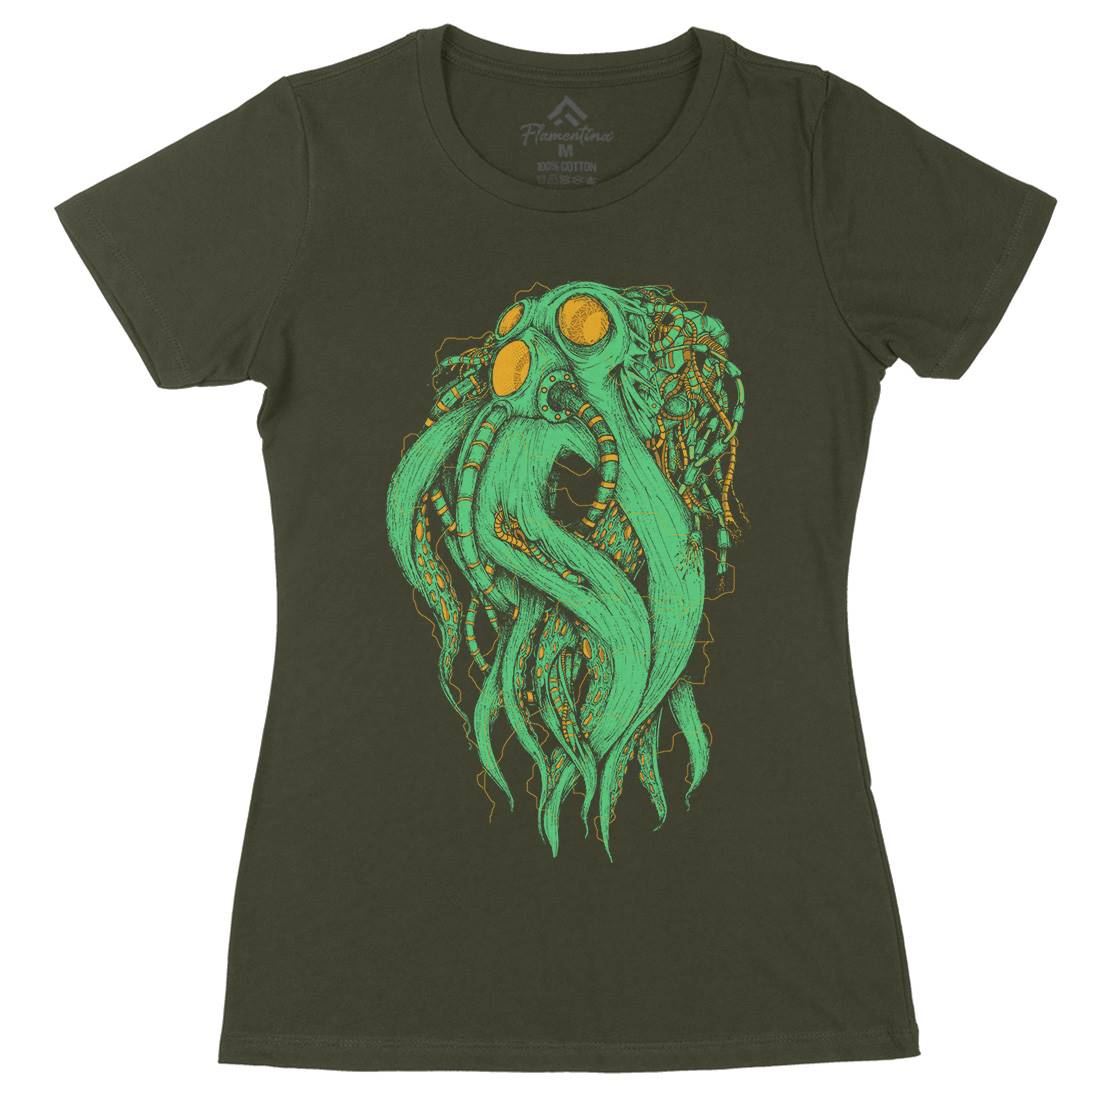 Octopus Robot Womens Organic Crew Neck T-Shirt Navy D062